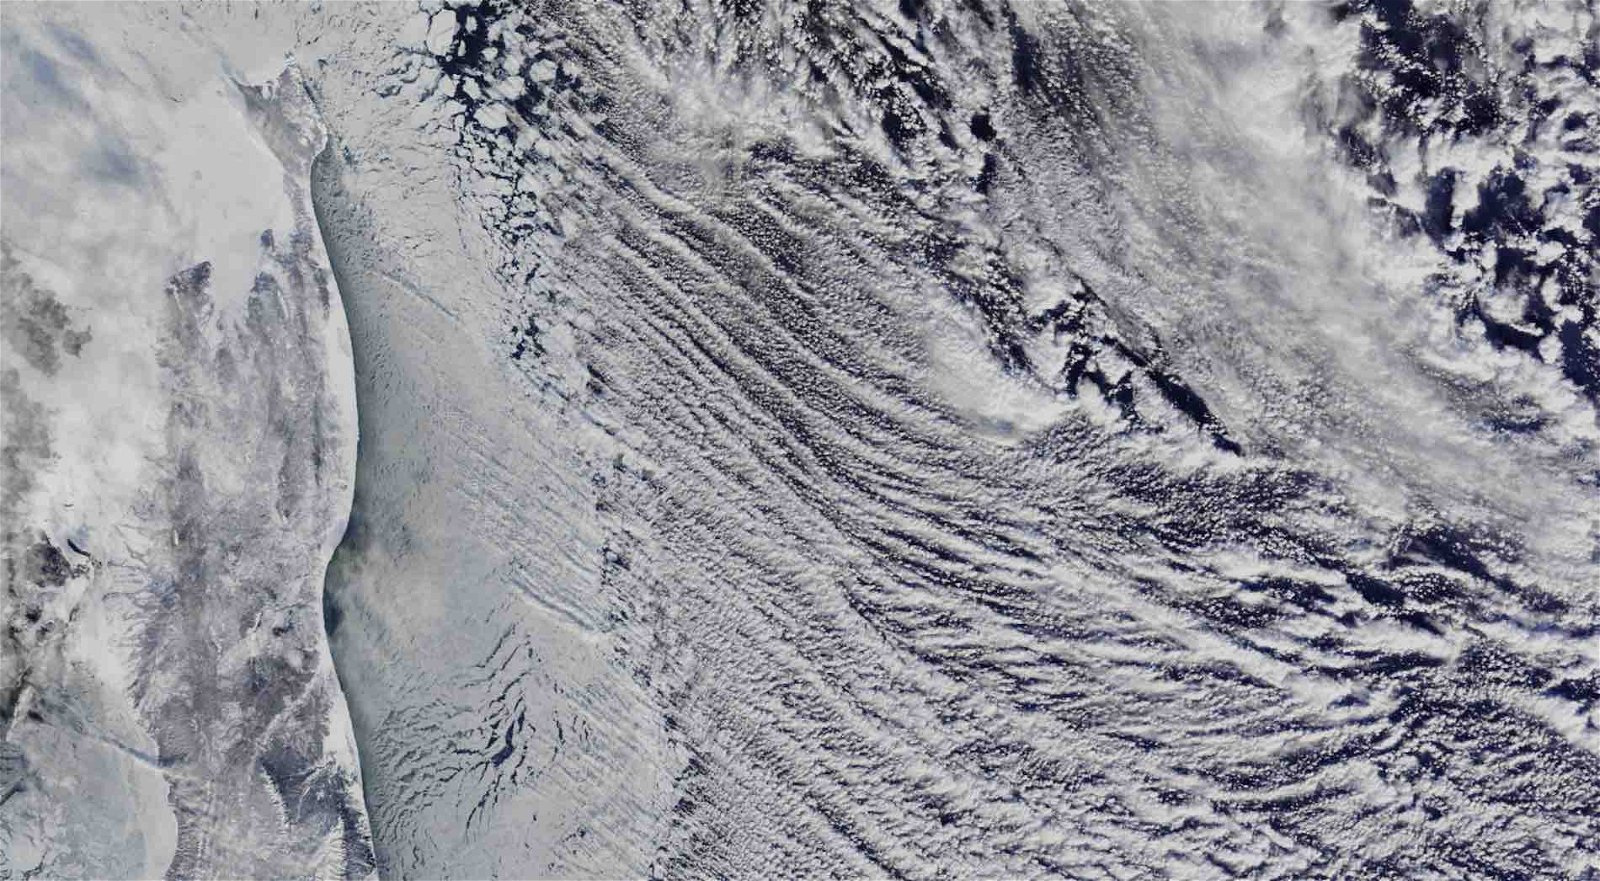 Imágenes satelitales de la NASA han revelado algo extraño en el cielo sobre la costa este de Rusia